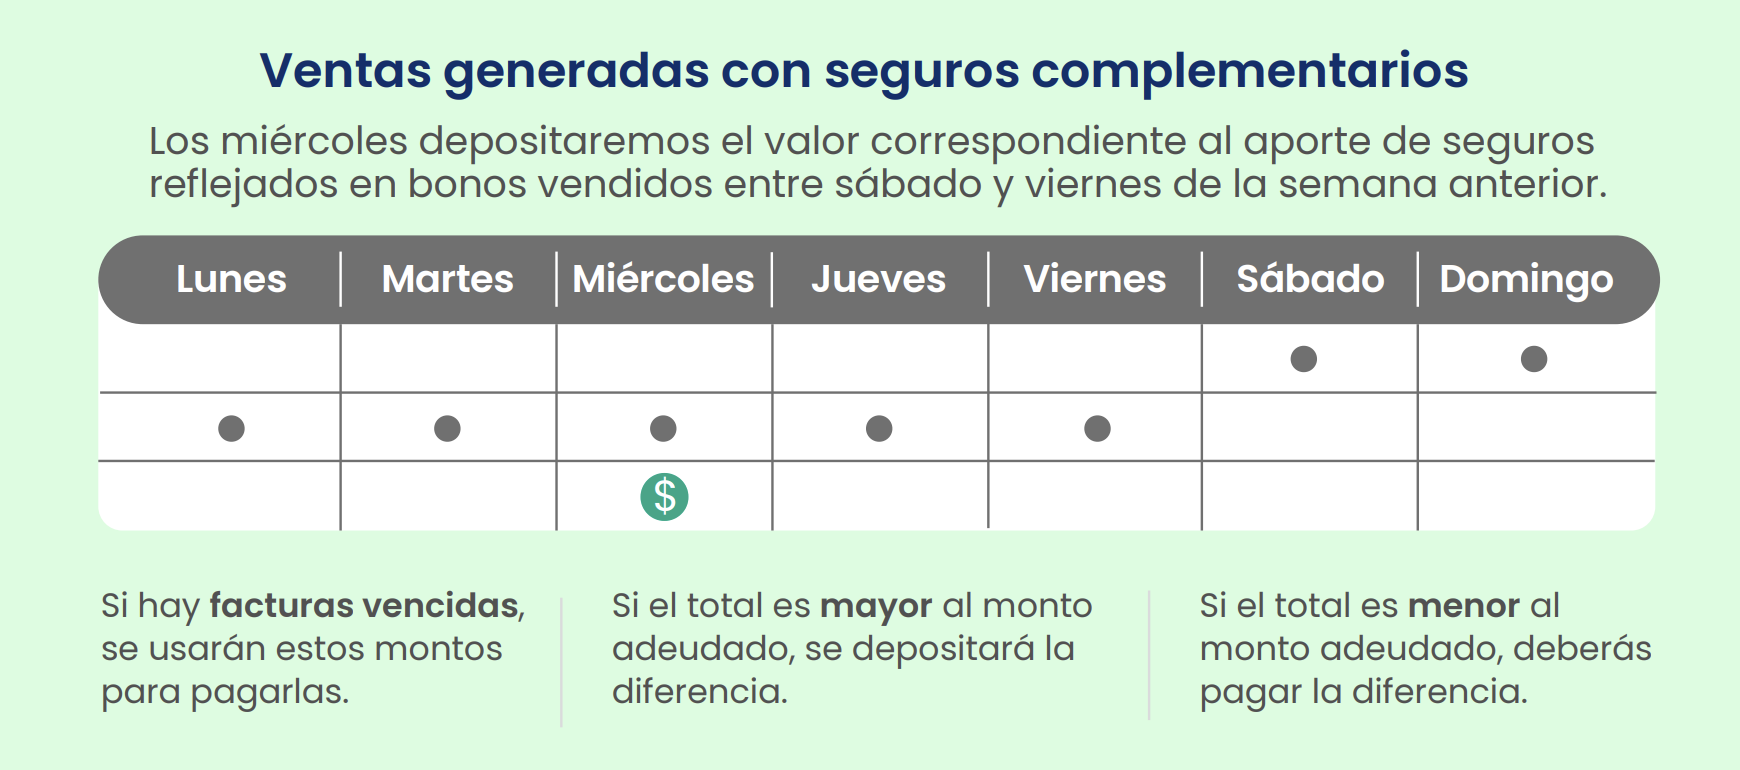 ventas_generadas_seguros_complementarios